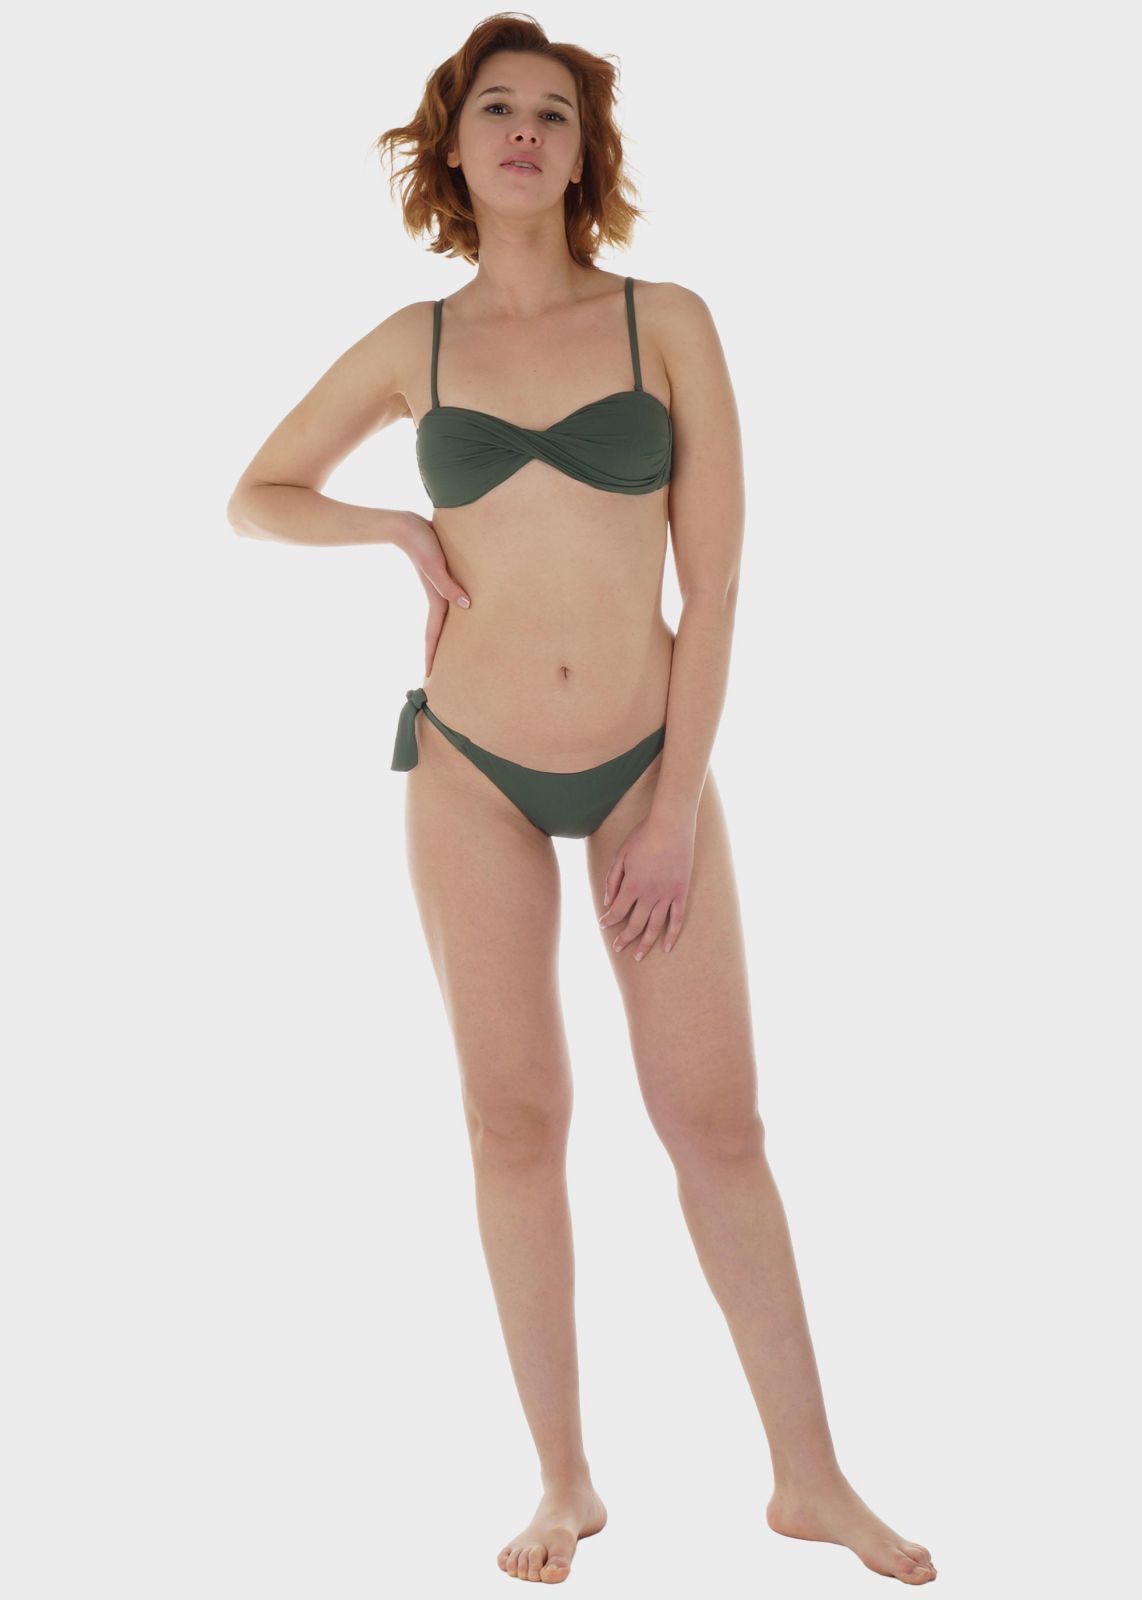 Γυναικείο σετ μαγιό bikini μονόχρωμο strapless ενσωματωμένη επένδυση slip κανονική γραμμή.Καλύπτει B Cup ΧΑΚΙ